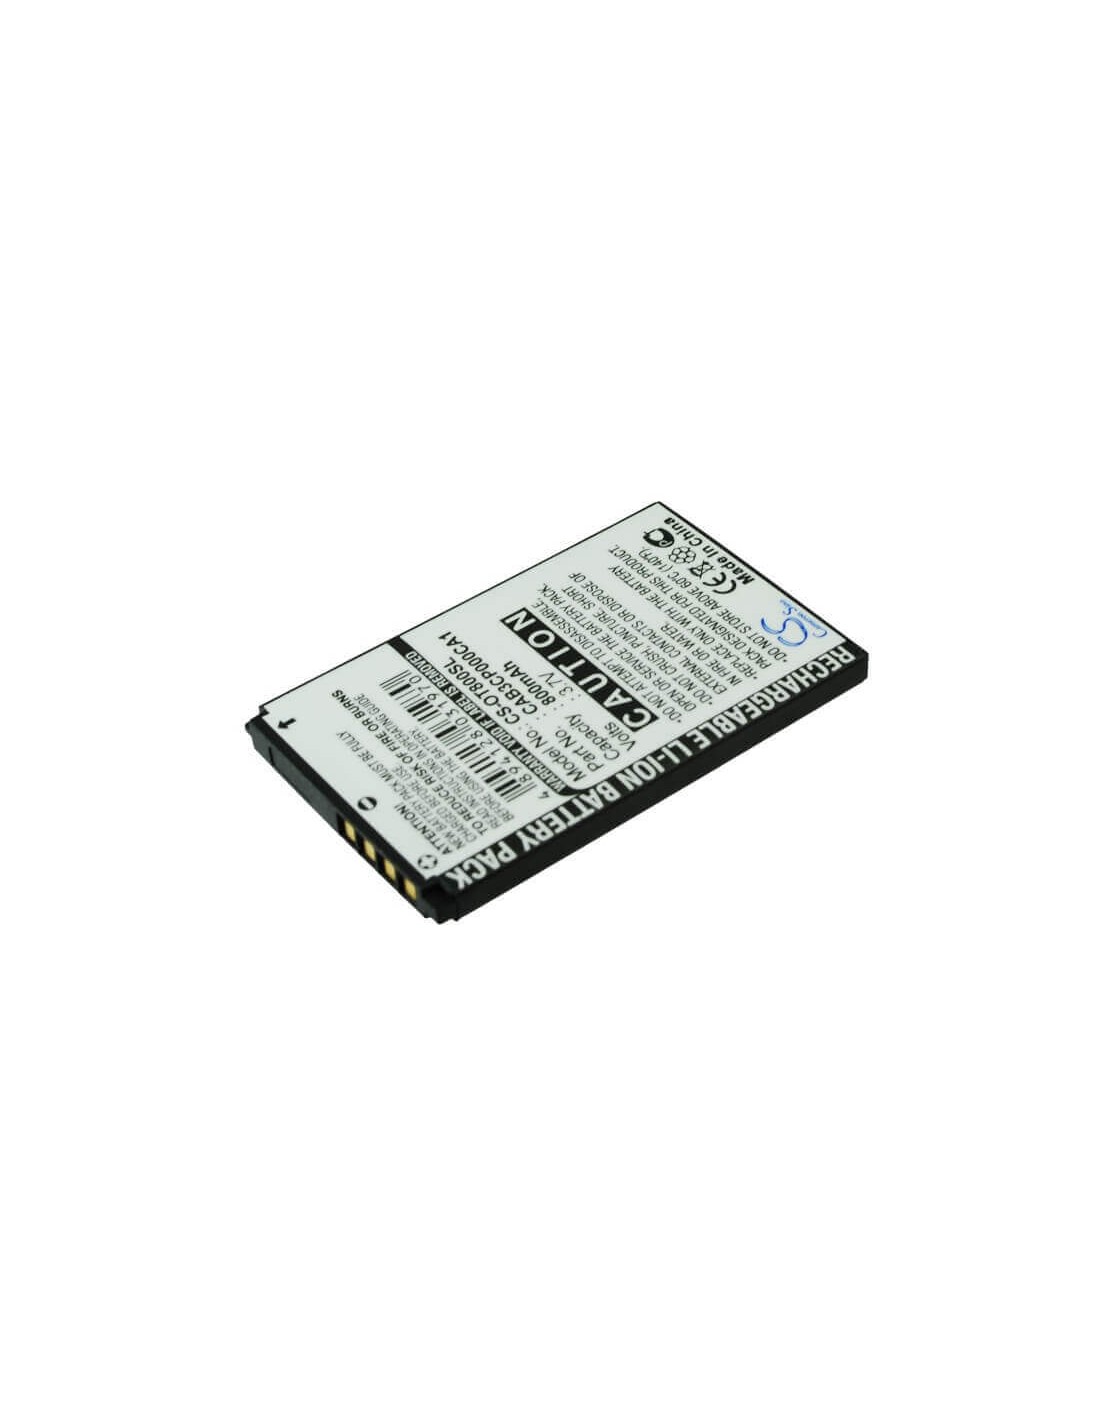 Battery for Alcatel OT-800, OT-800A, Tribe 3.7V, 800mAh - 2.96Wh